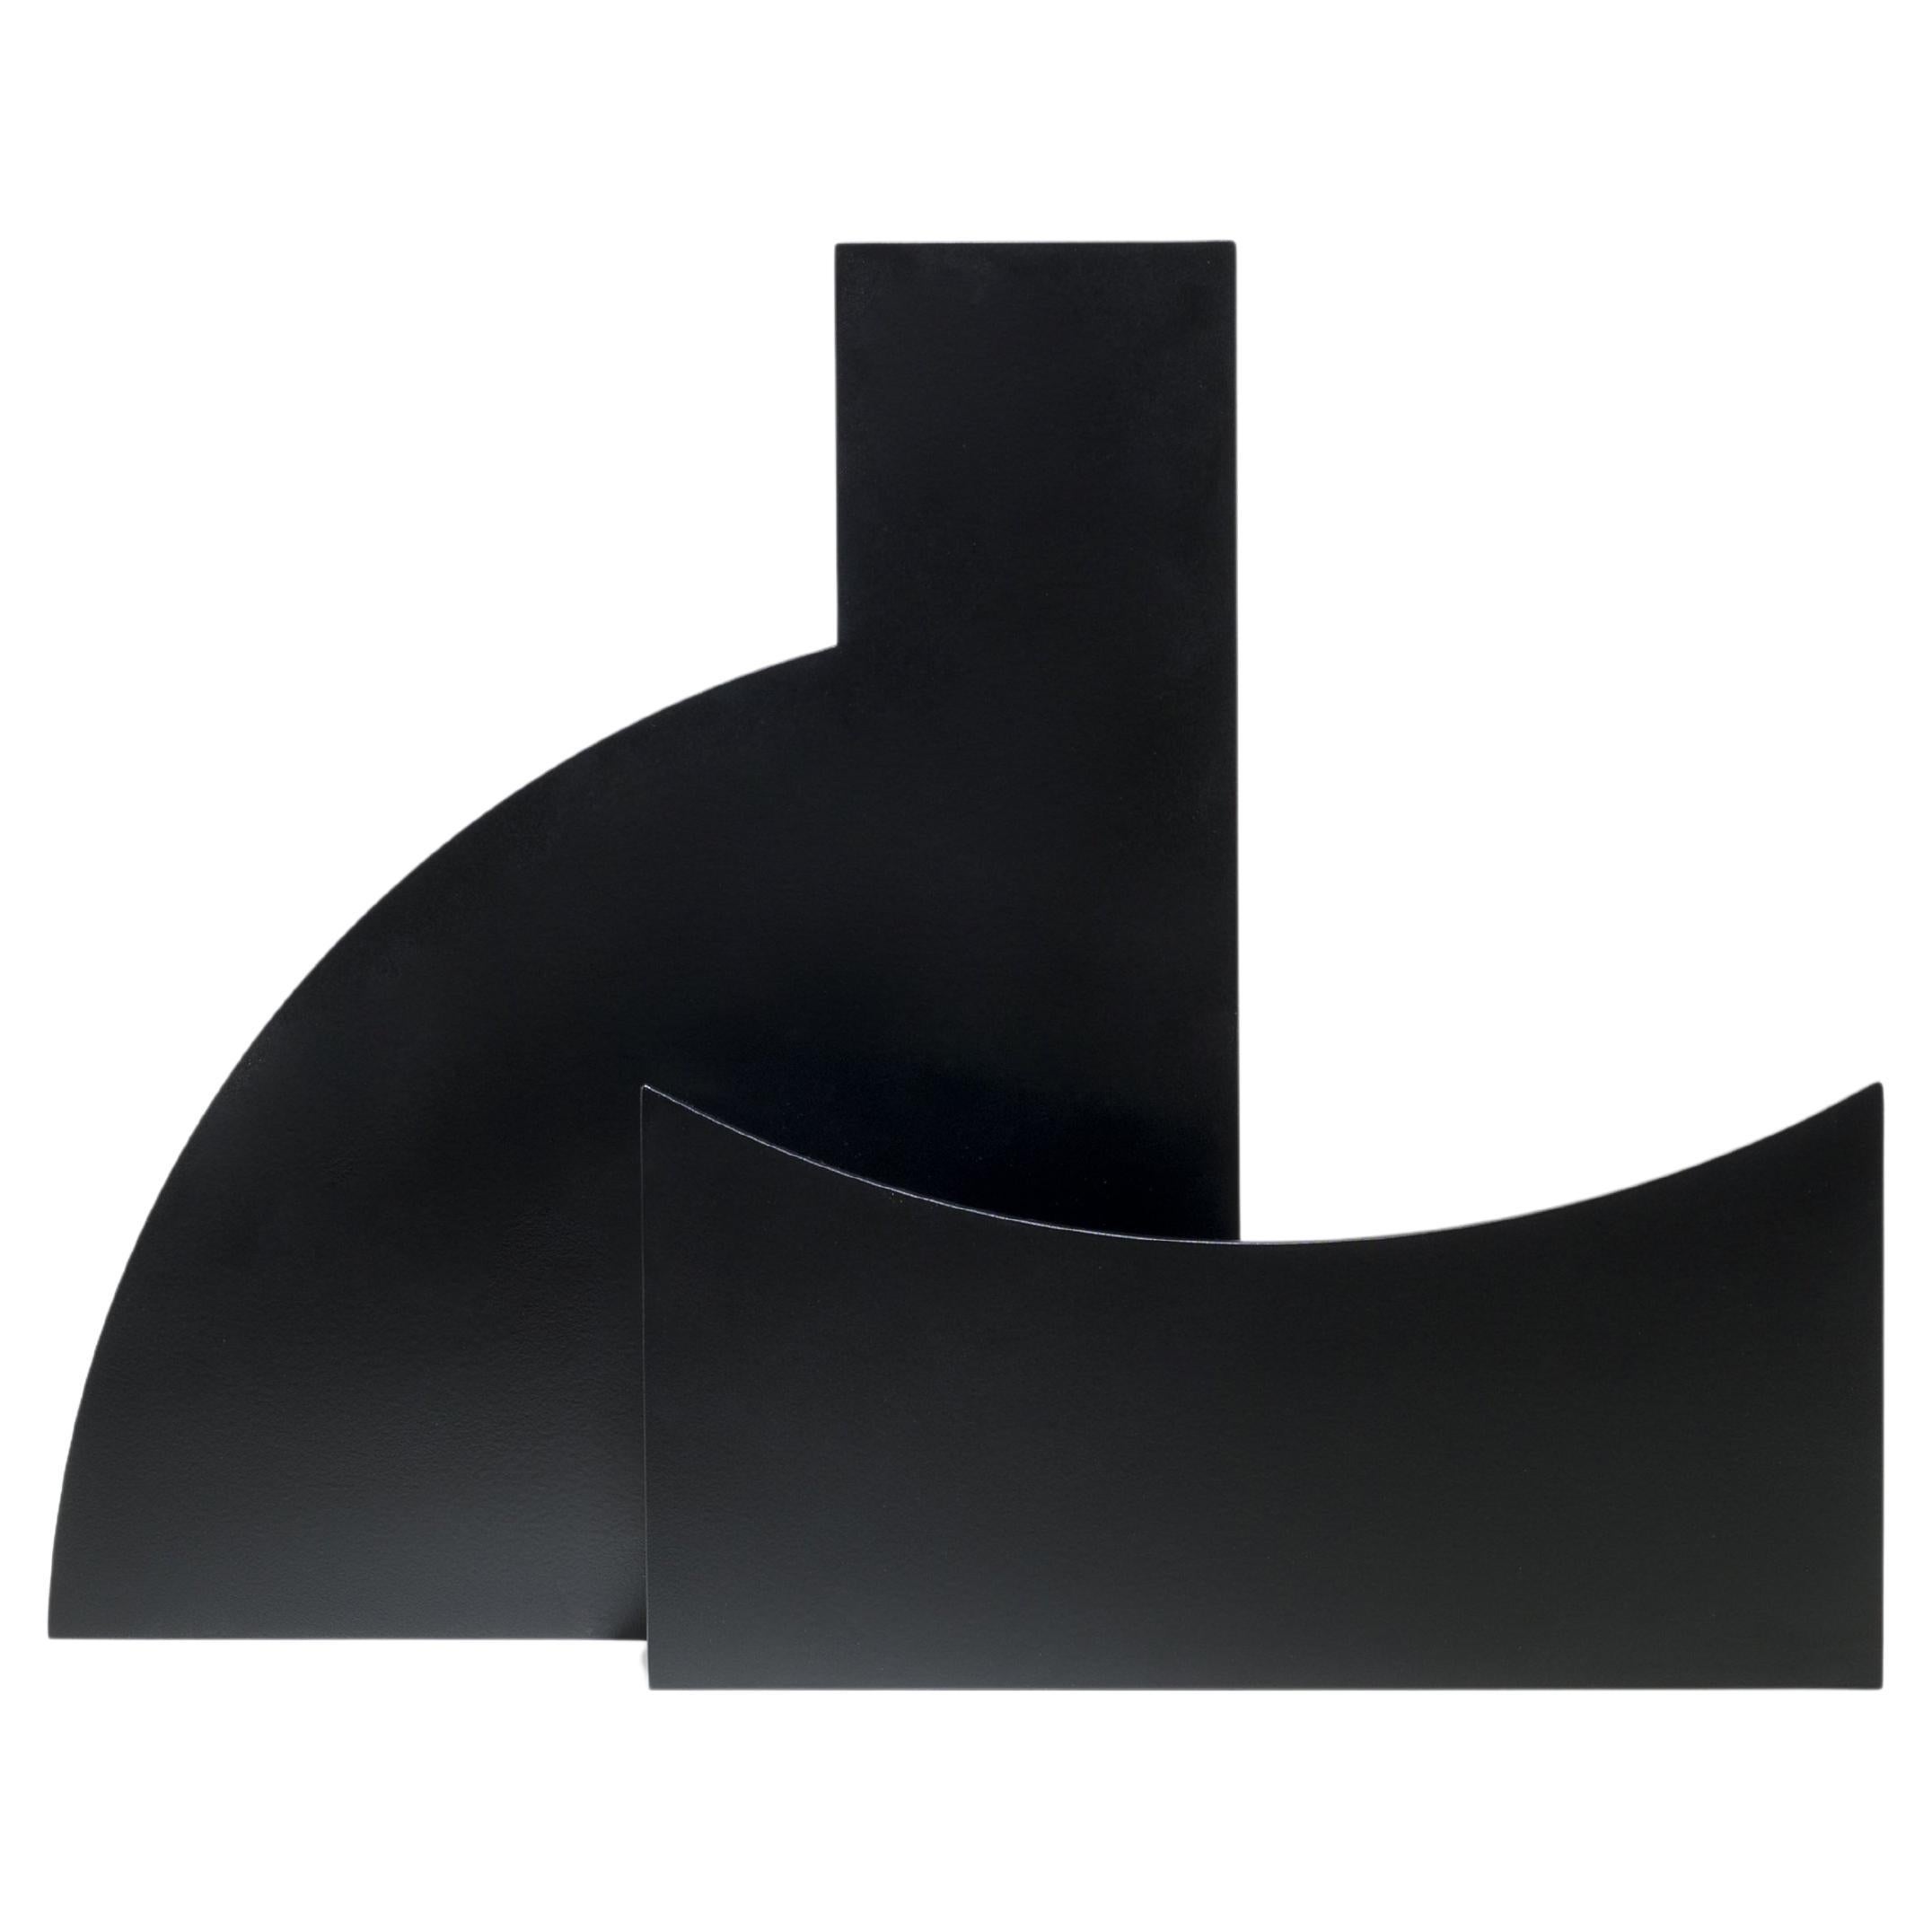 Zeitgenössische skulpturale Vase aus schwarzem Metall mit Ausschnitt V03 von Millim Studio